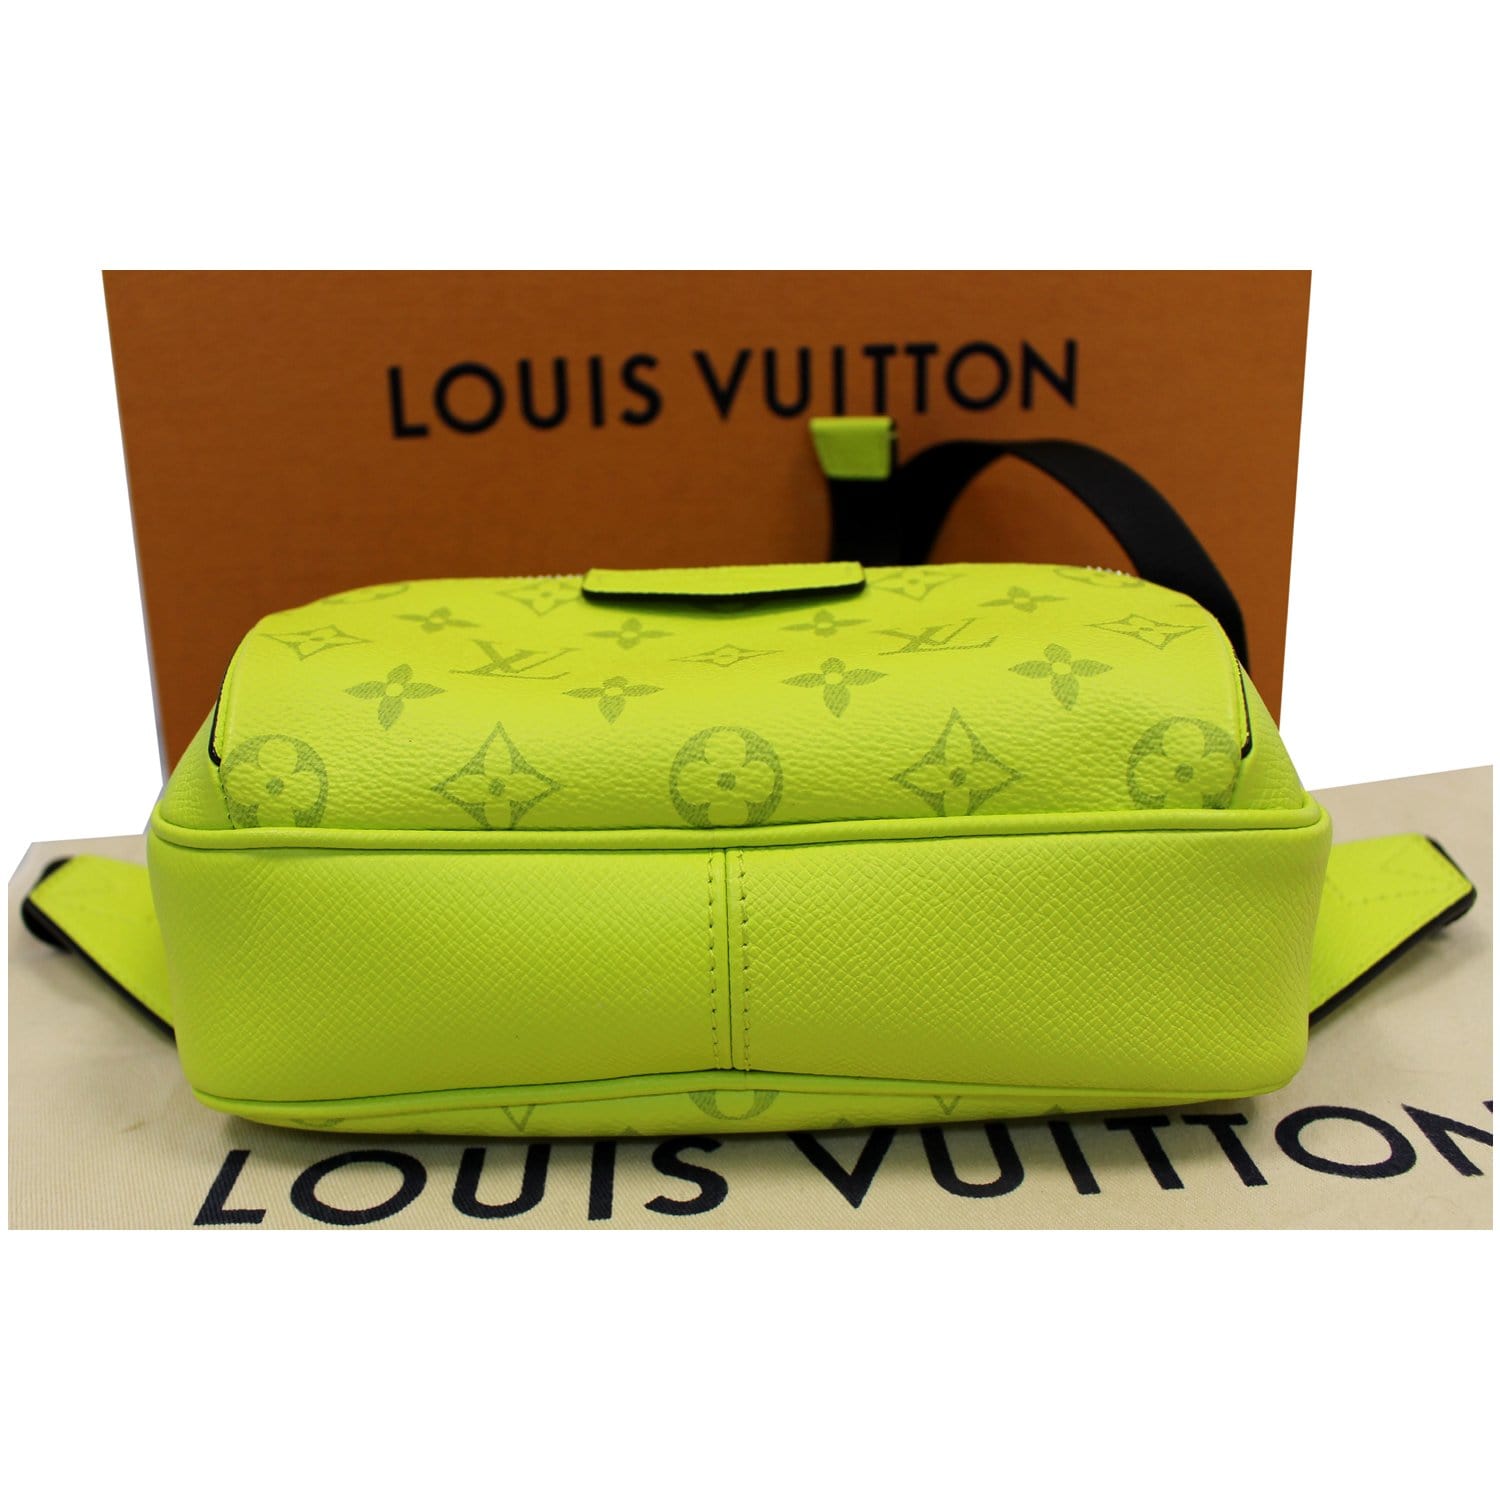 LOUIS VUITTON Boston bag M30114 Epithea green Taiga Taiga from